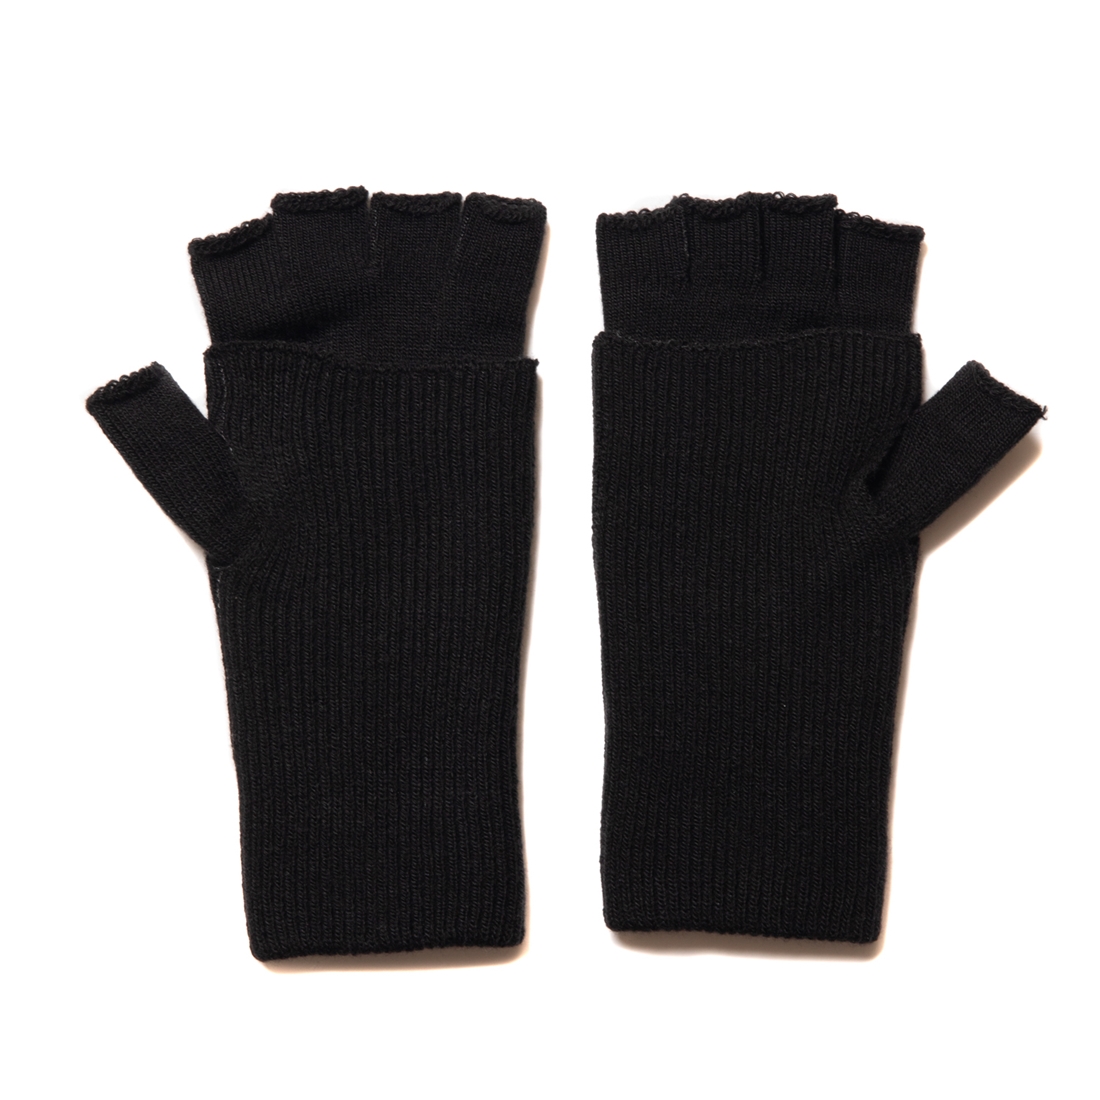 画像: COOTIE PRODUCTIONS/Fingerless Cuffed Knit Glove（Black）［フィンガーレスニットグローブ-22秋冬］